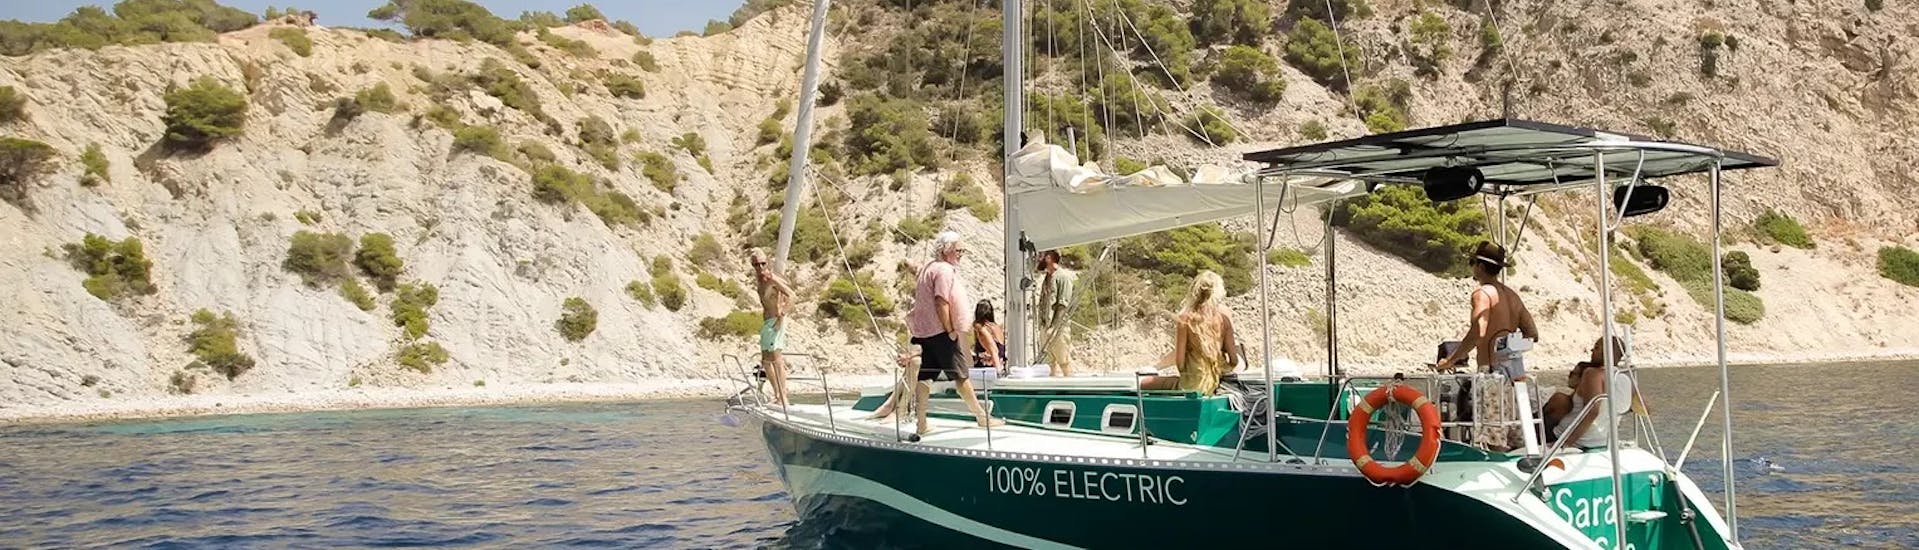 Notre monocoque électrique explore la côte autour d'Ibiza lors de la Balade privée d'une journée en bateau autour d'Ibiza avec Baignade et Snorkeling avec La Bella Verde Ibiza.